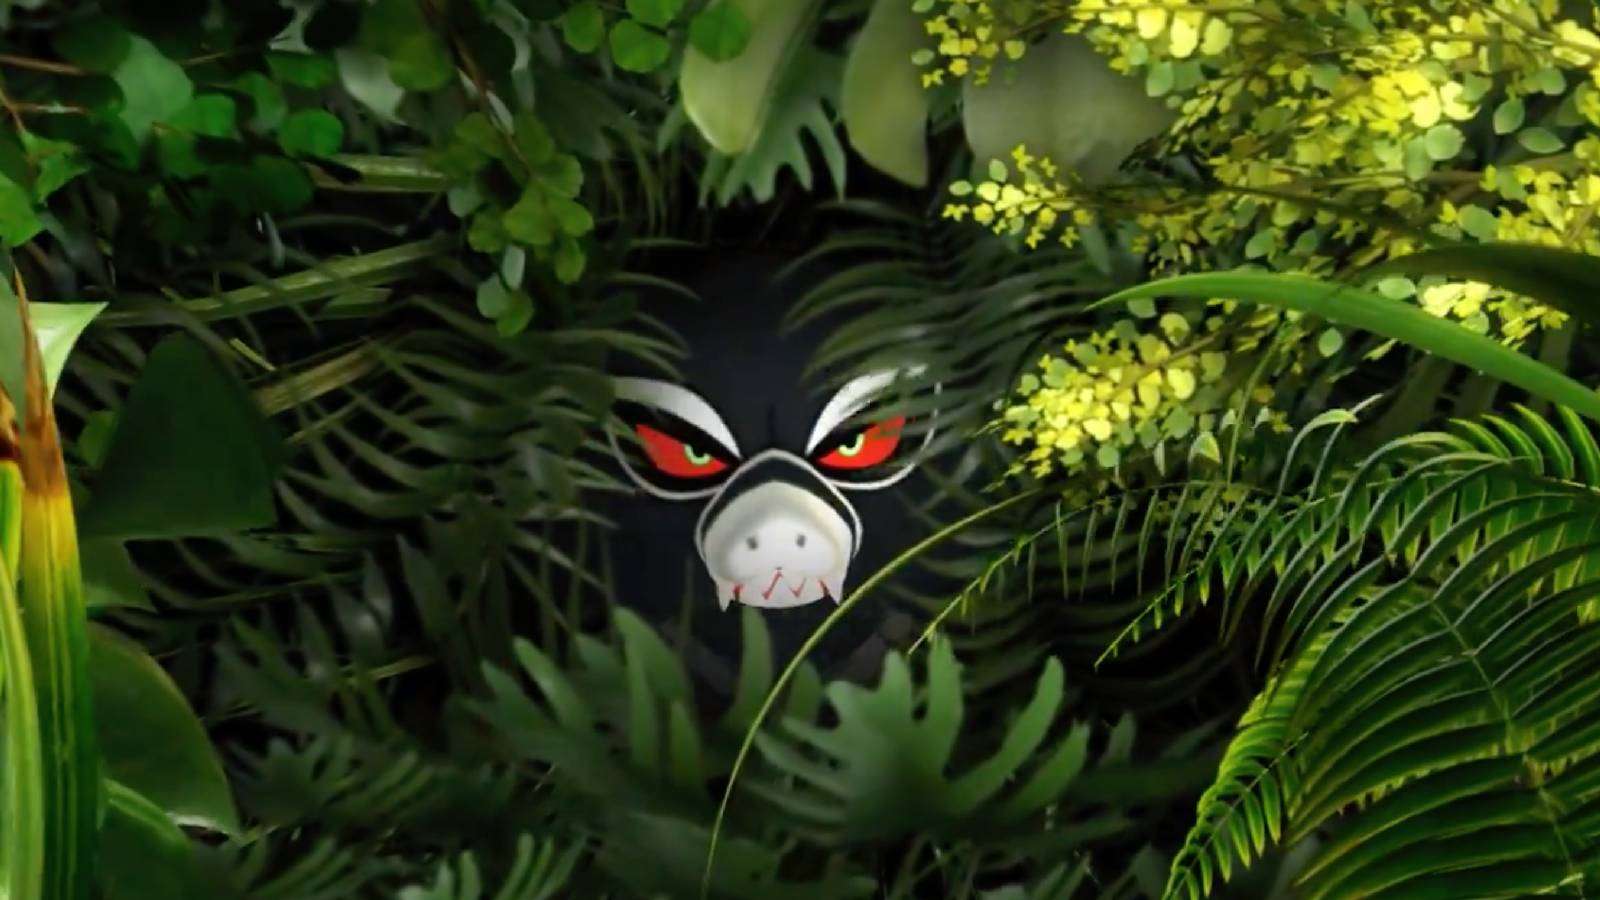 The Pokemon Zarude peers through a jungle bush